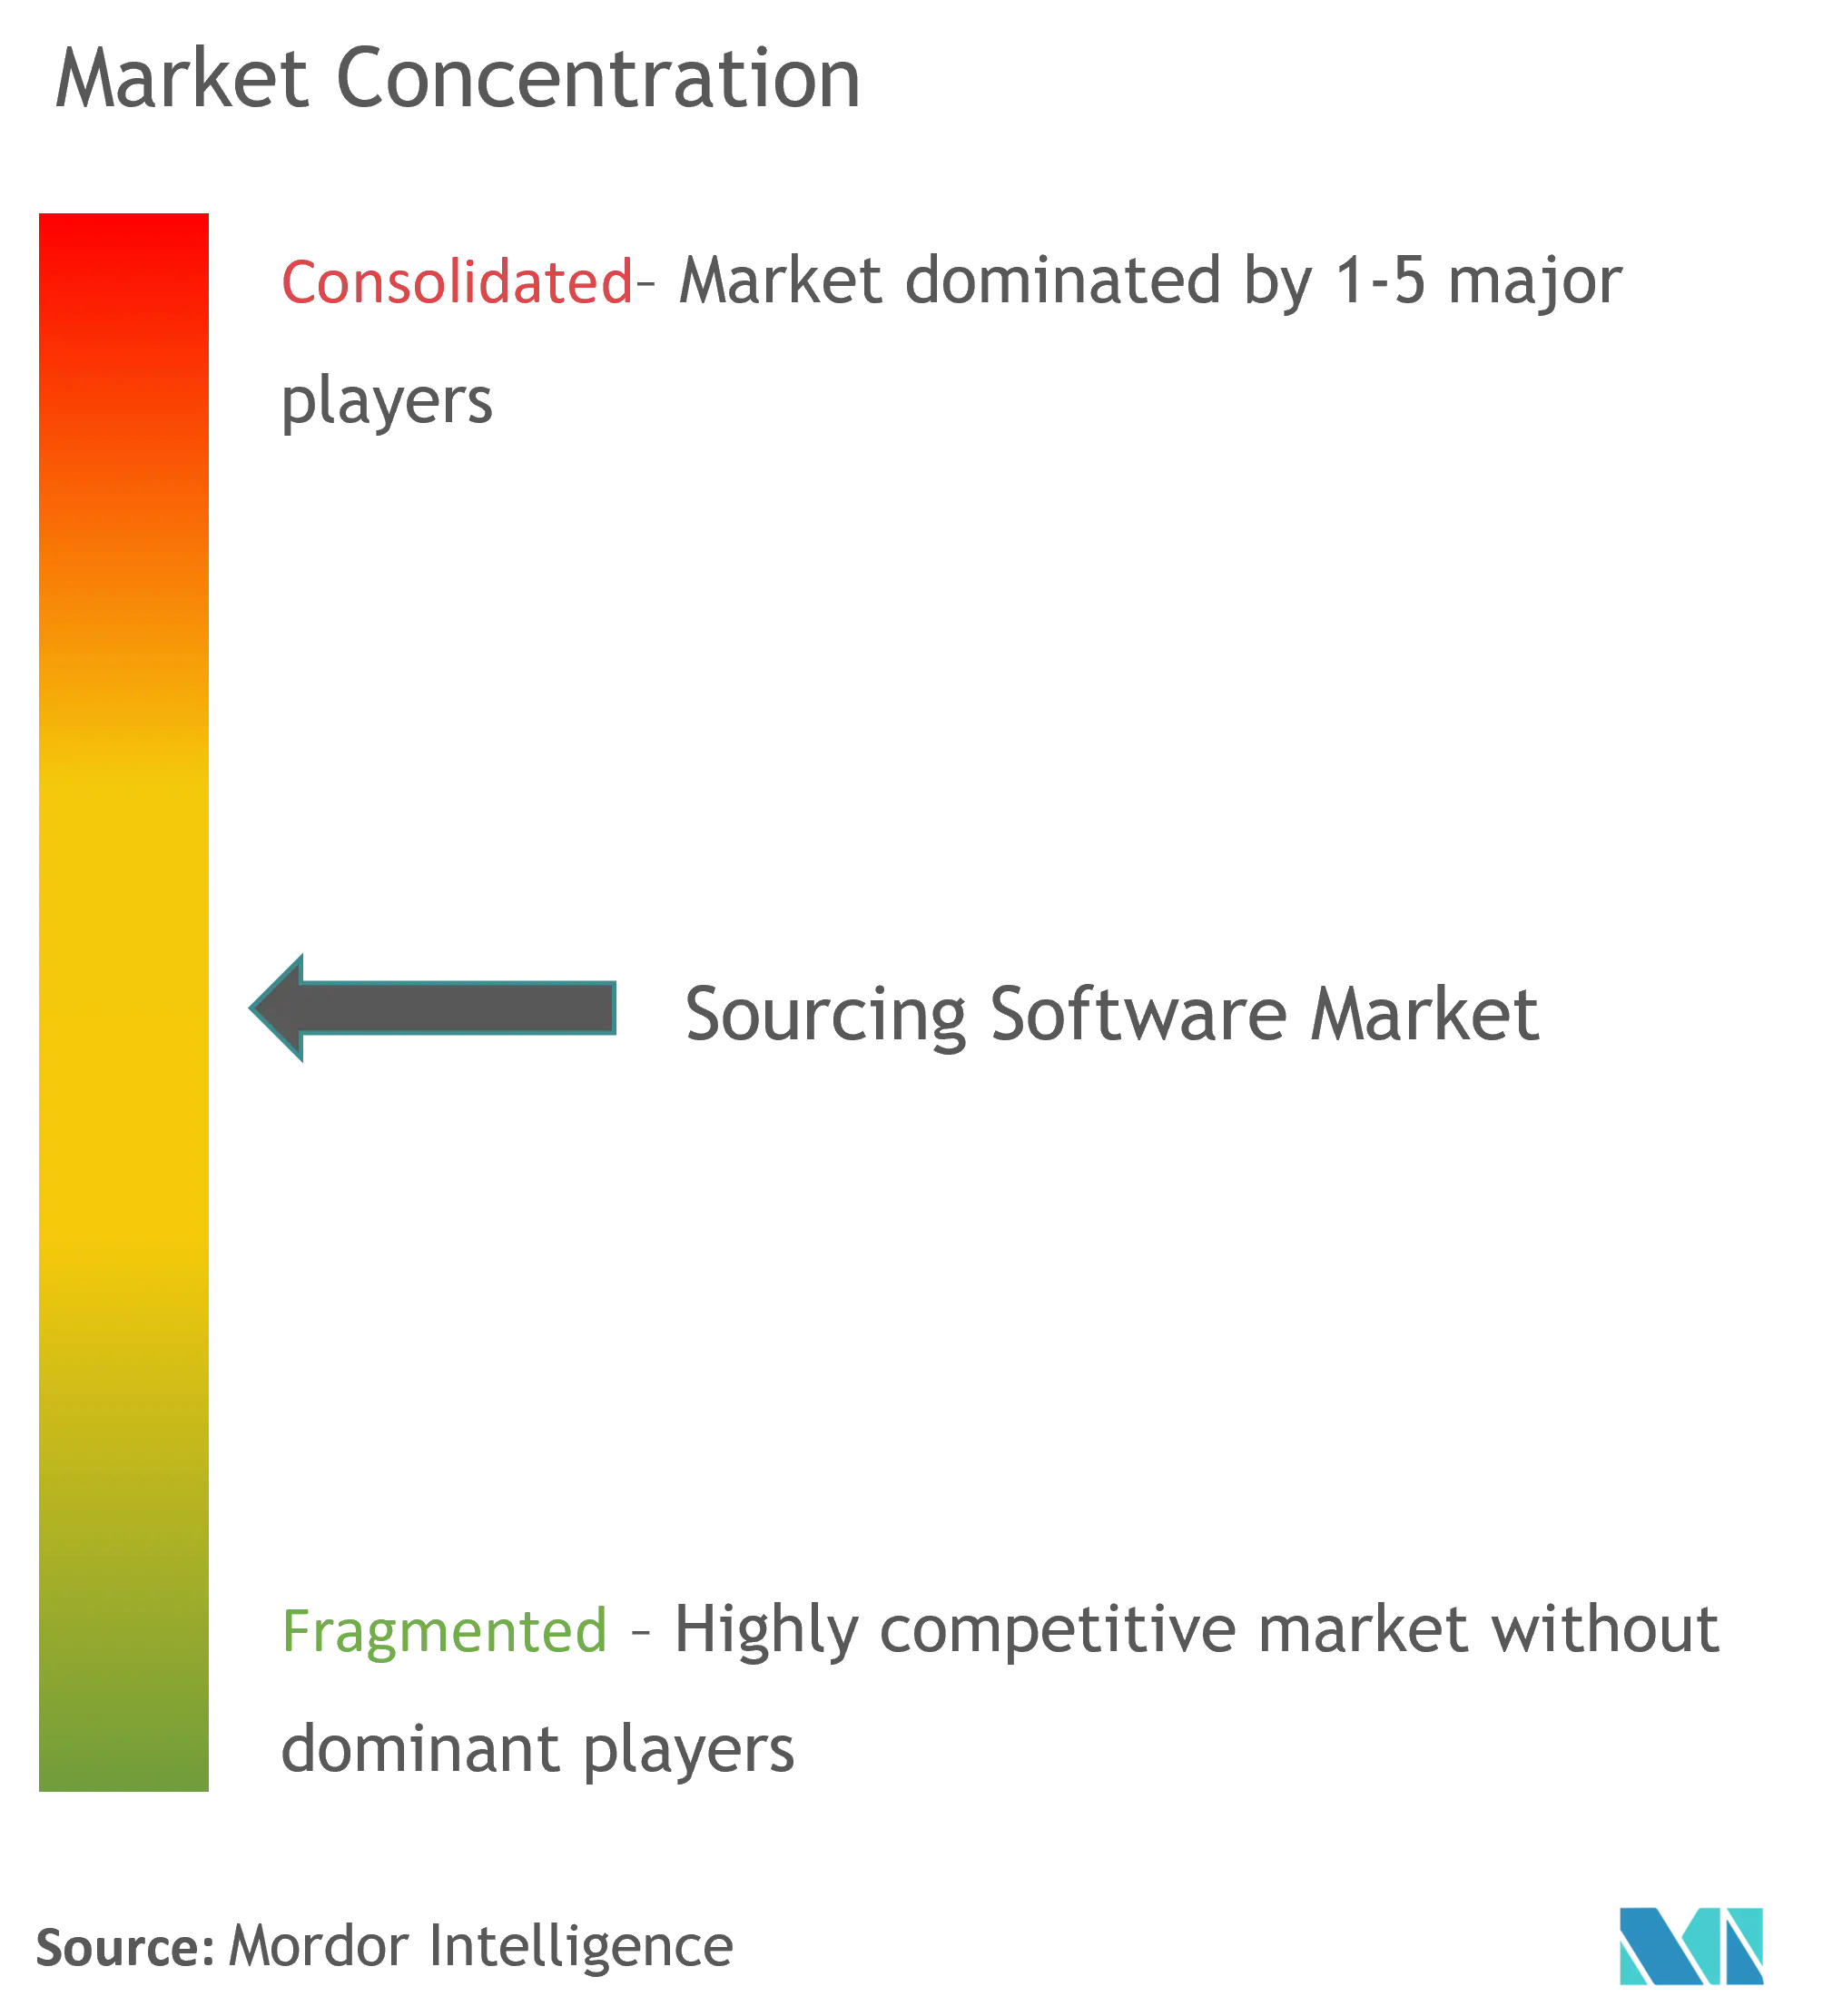 ソーシングソフトウェア市場 - 市場集中度.png